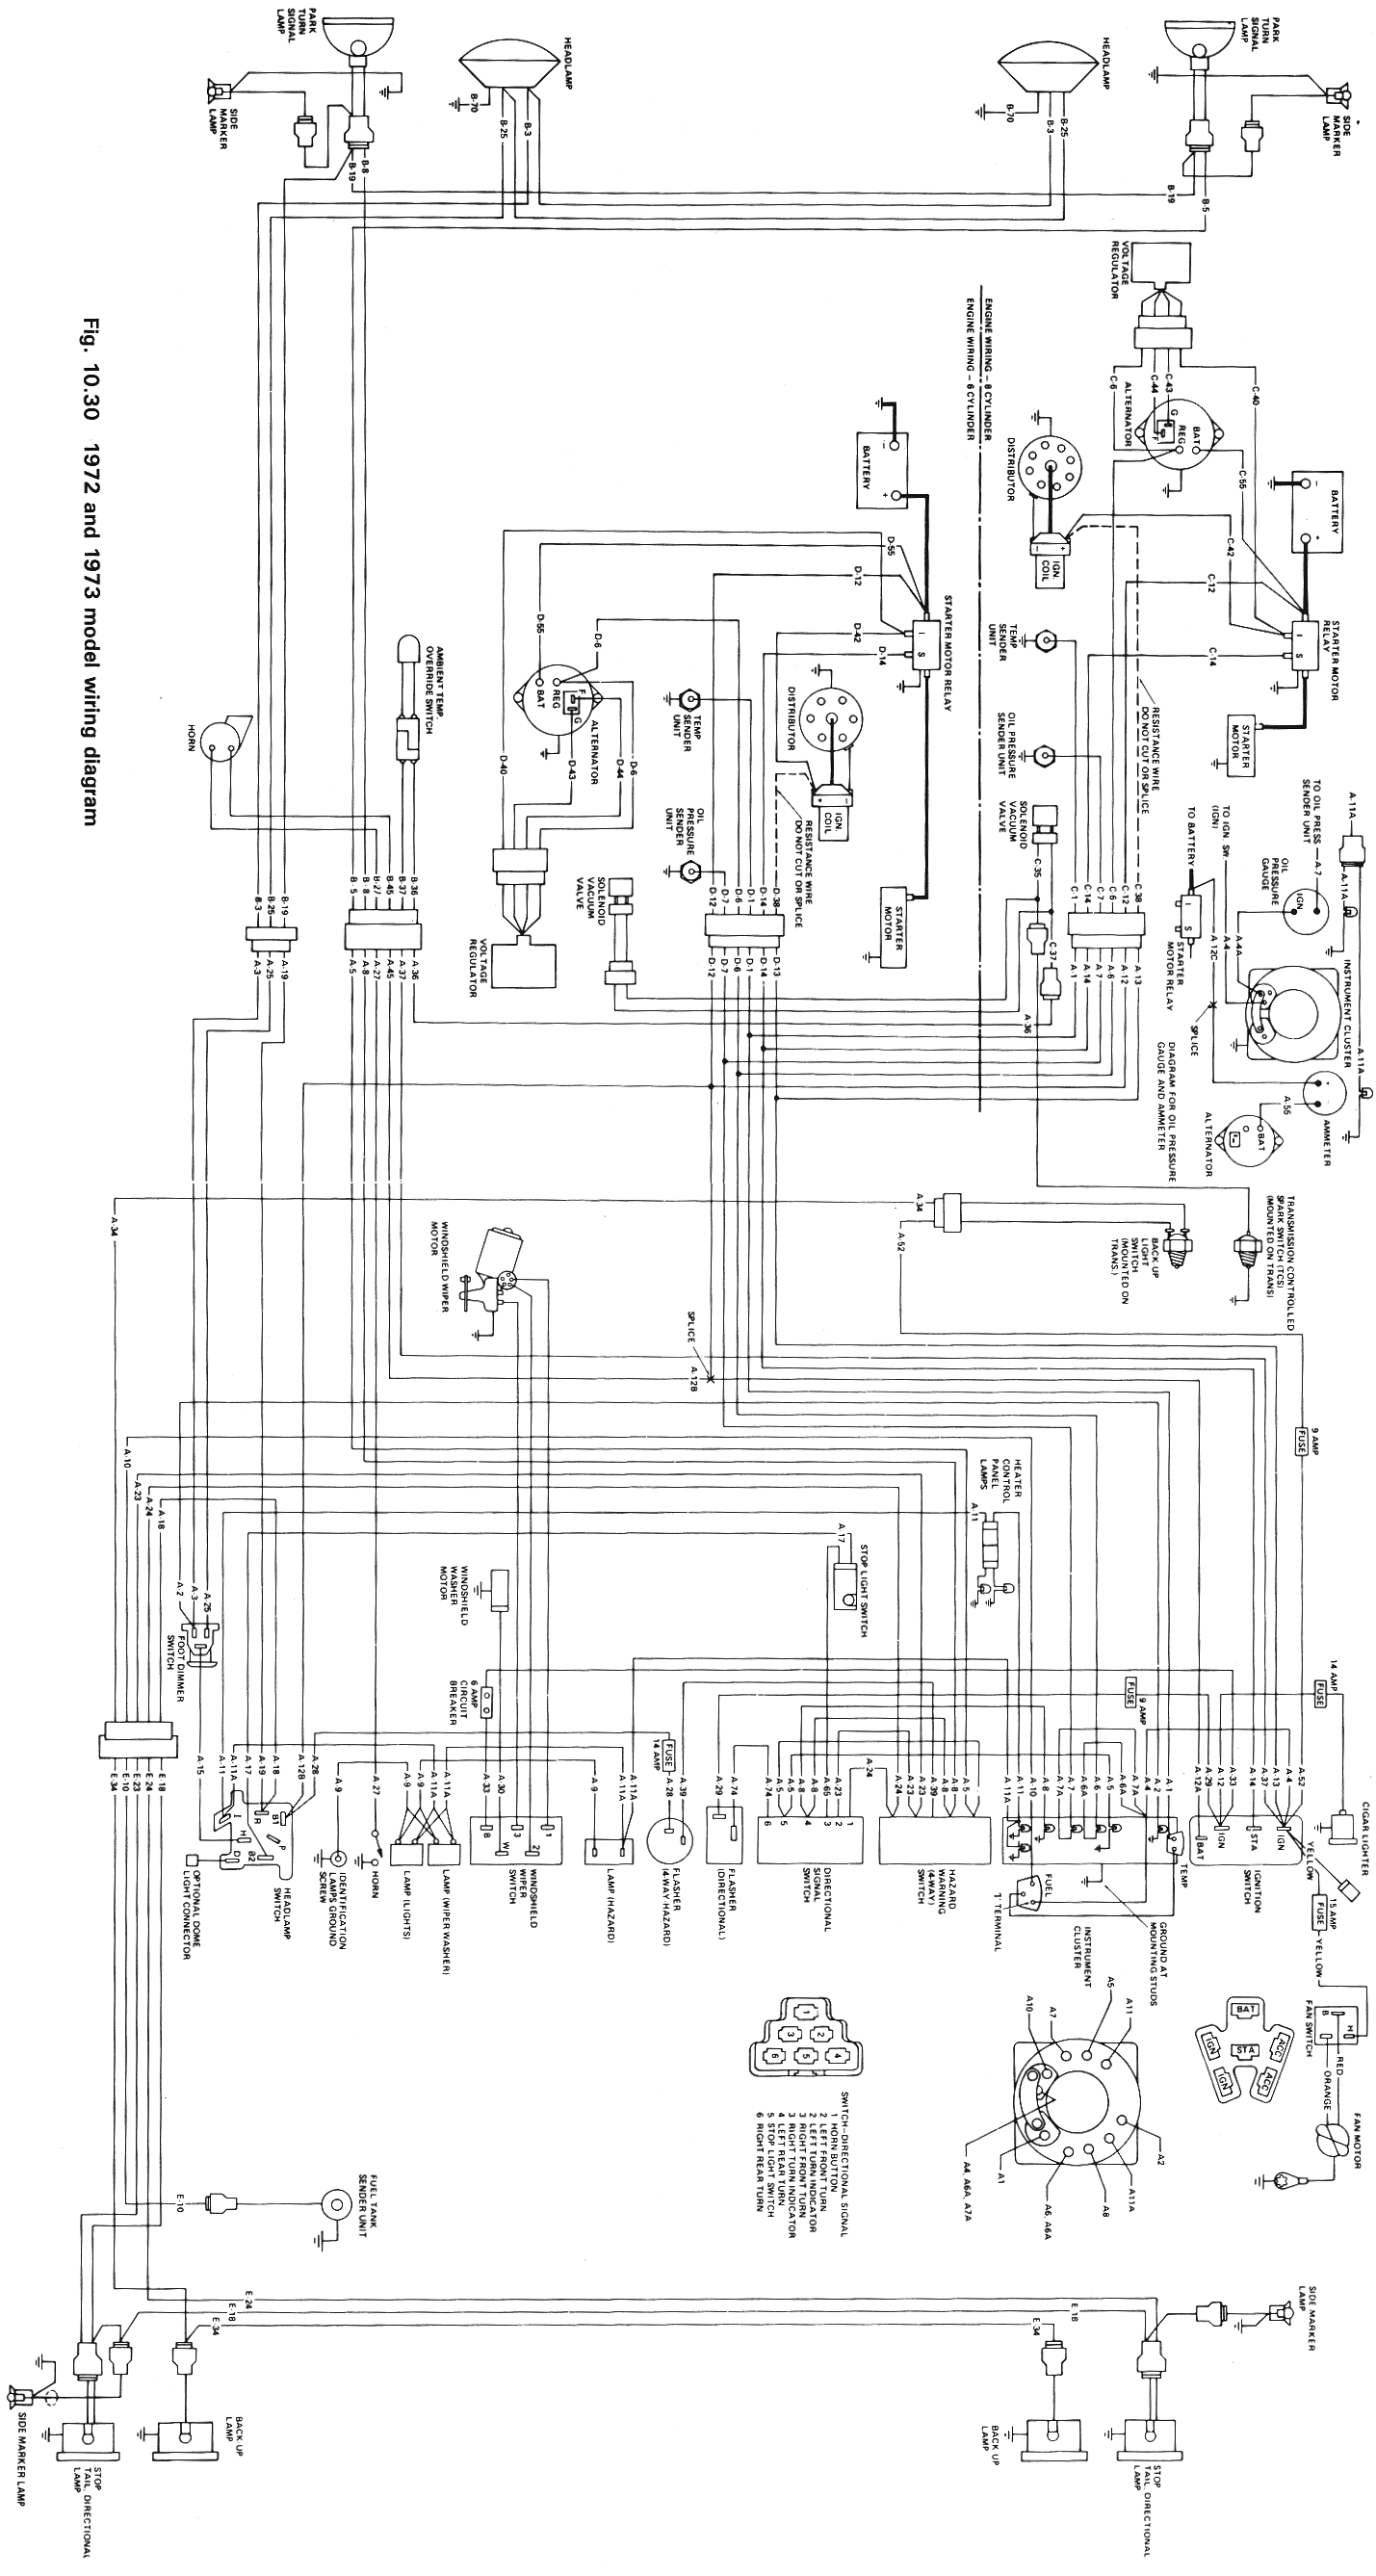 Wiring Schematics | eWillys  1975 Jeep Cj5 Wiring Diagram    eWillys